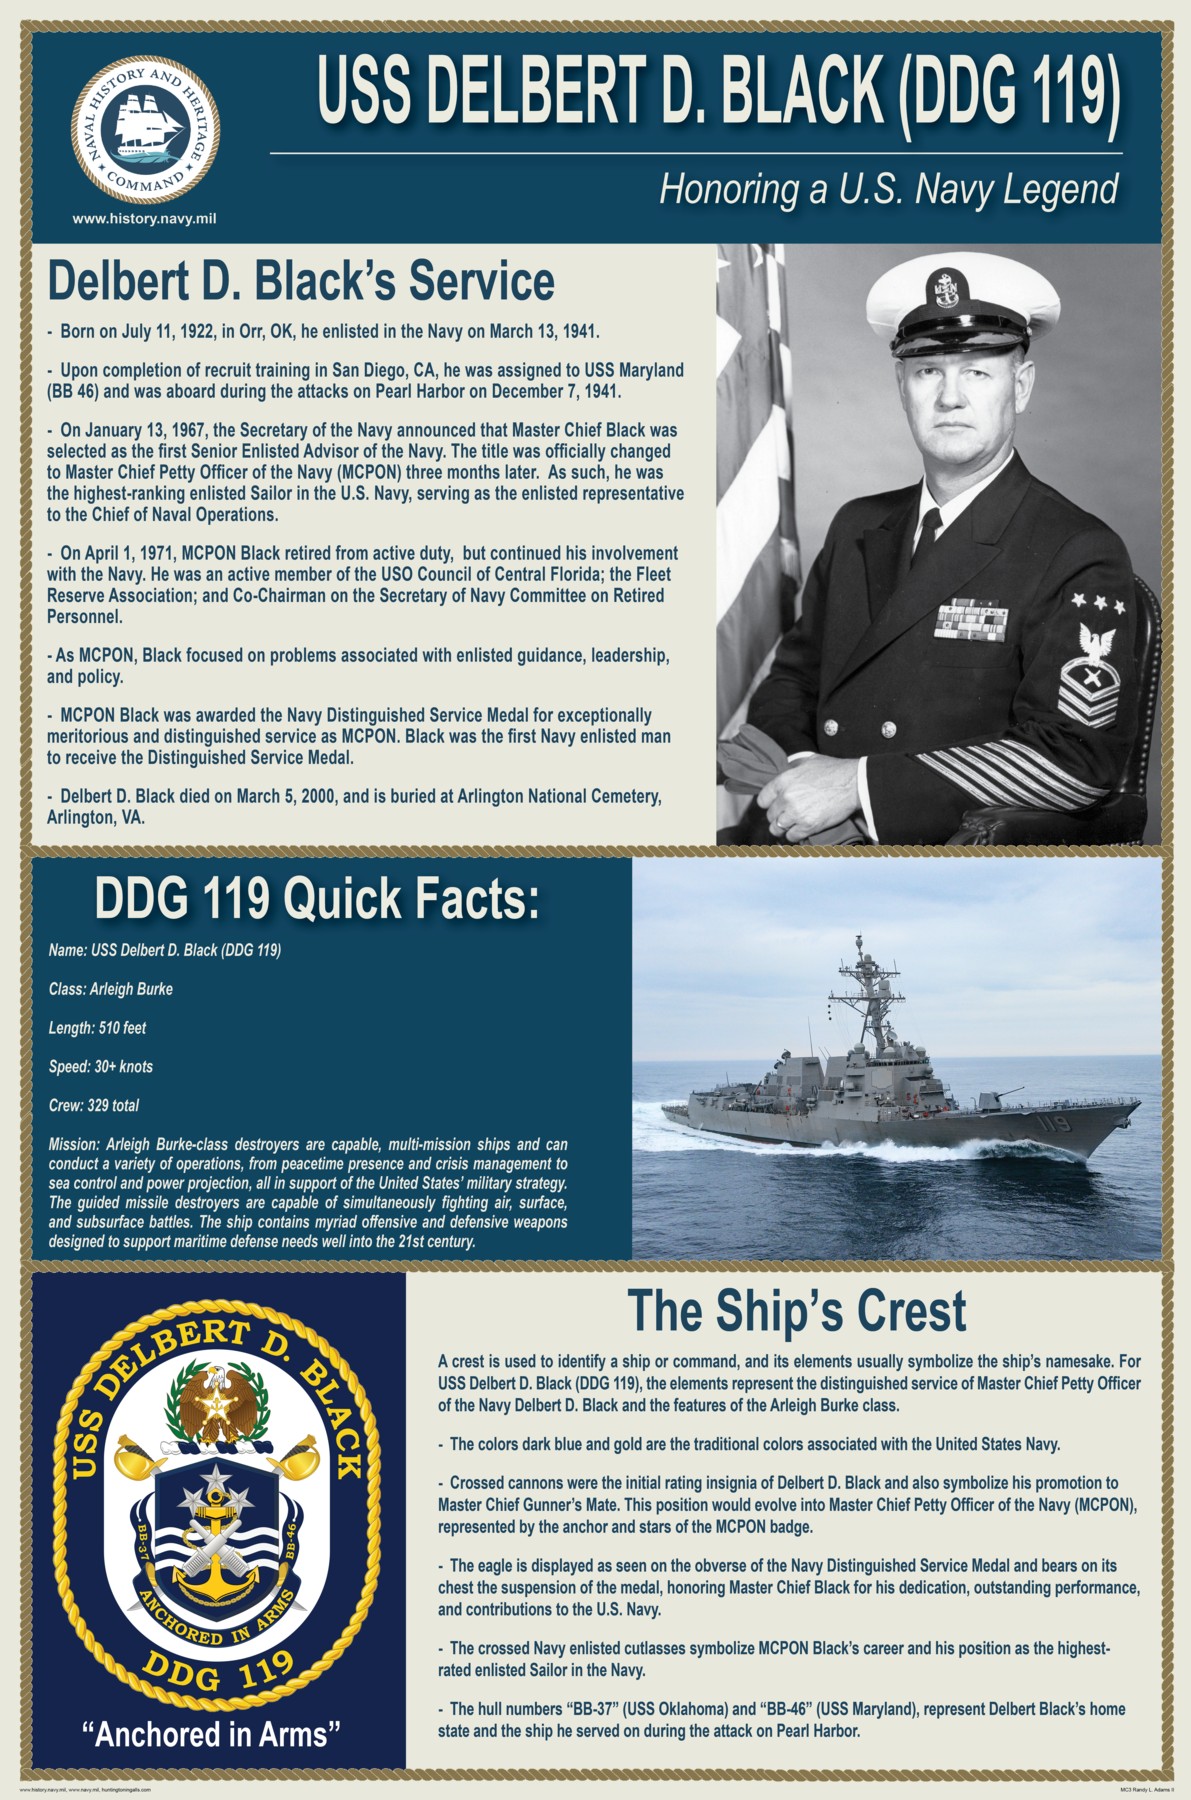 delbert d. black mcpon master chief petty officer navy data memory